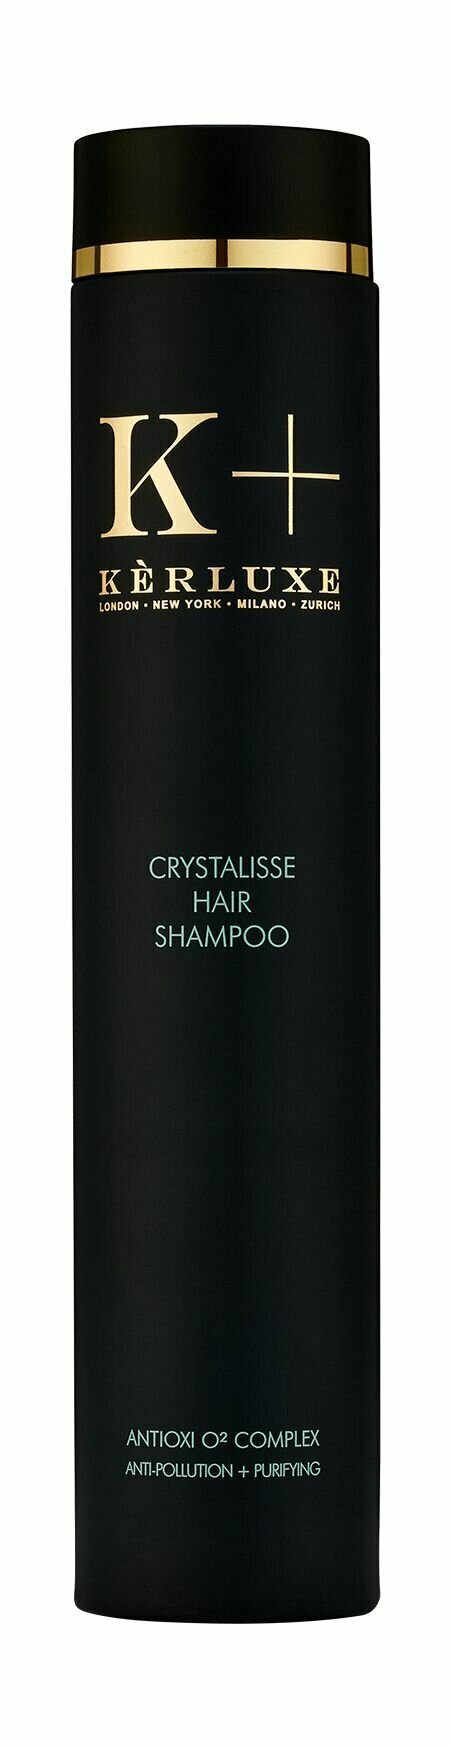 Детокс-шампунь для волос и кожи головы с пептидами / Kerluxe Crystalisse Hair Shampoo